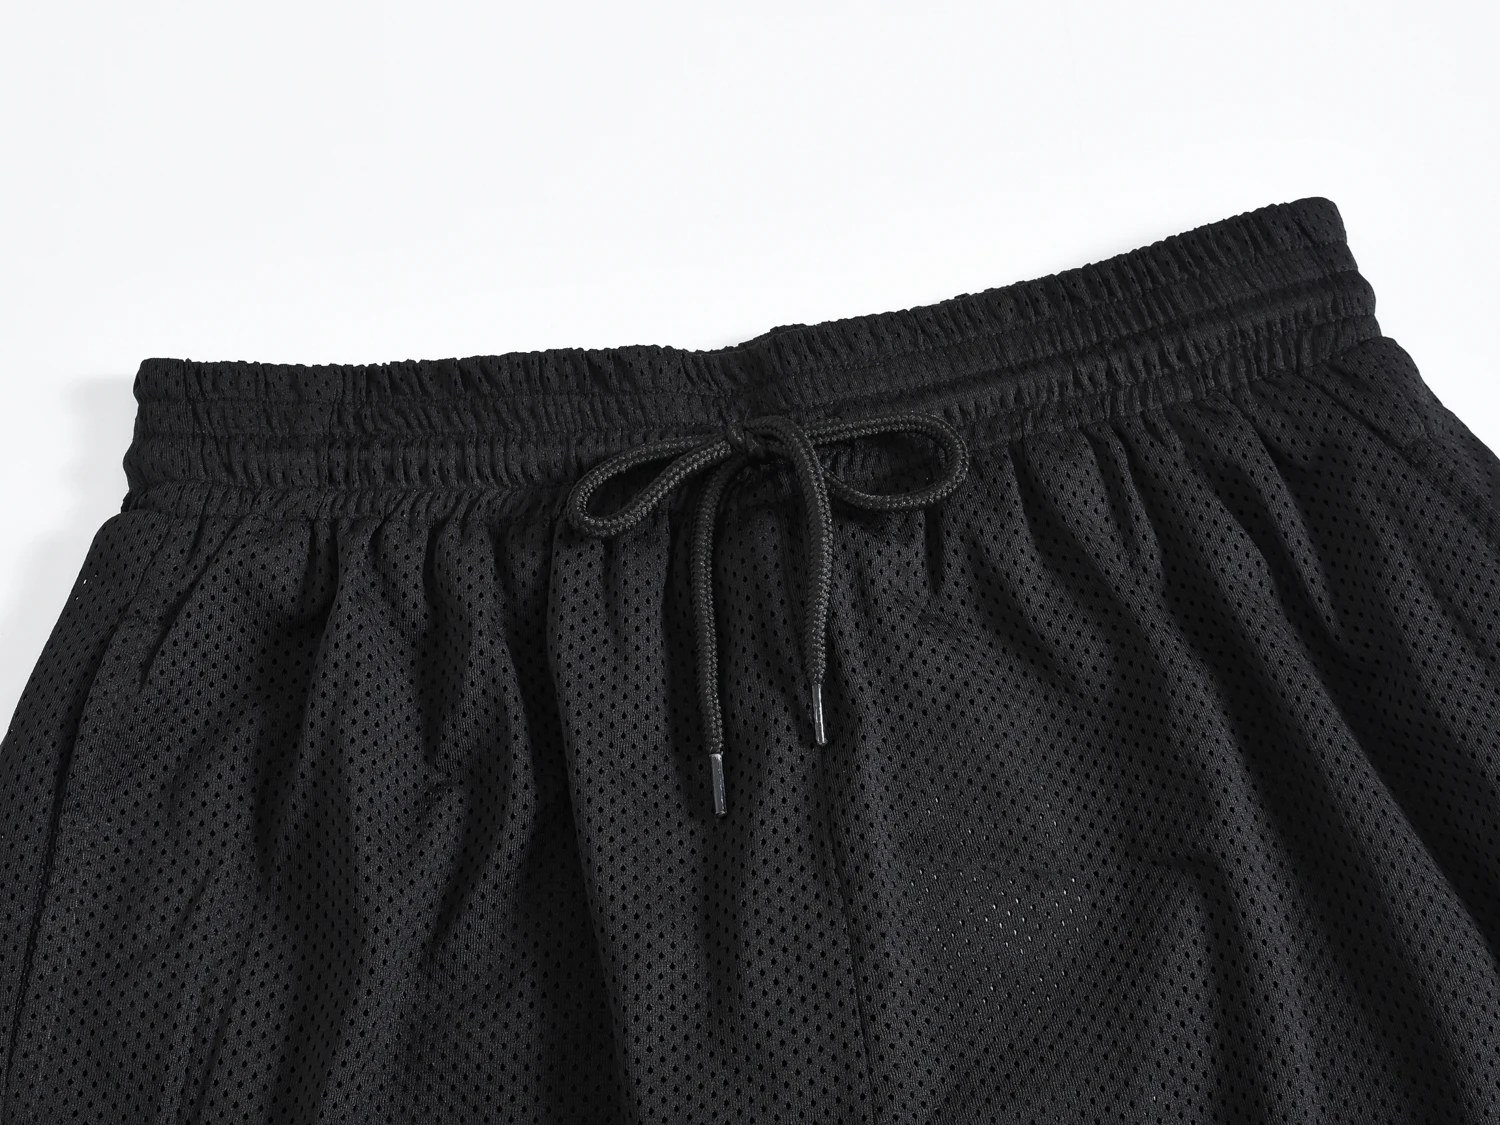 Ins port wind летние брендовые быстросохнущие спортивные повседневные штаны с эластичной резинкой на талии дышащие однотонные прямые сетчатые мужские шорты